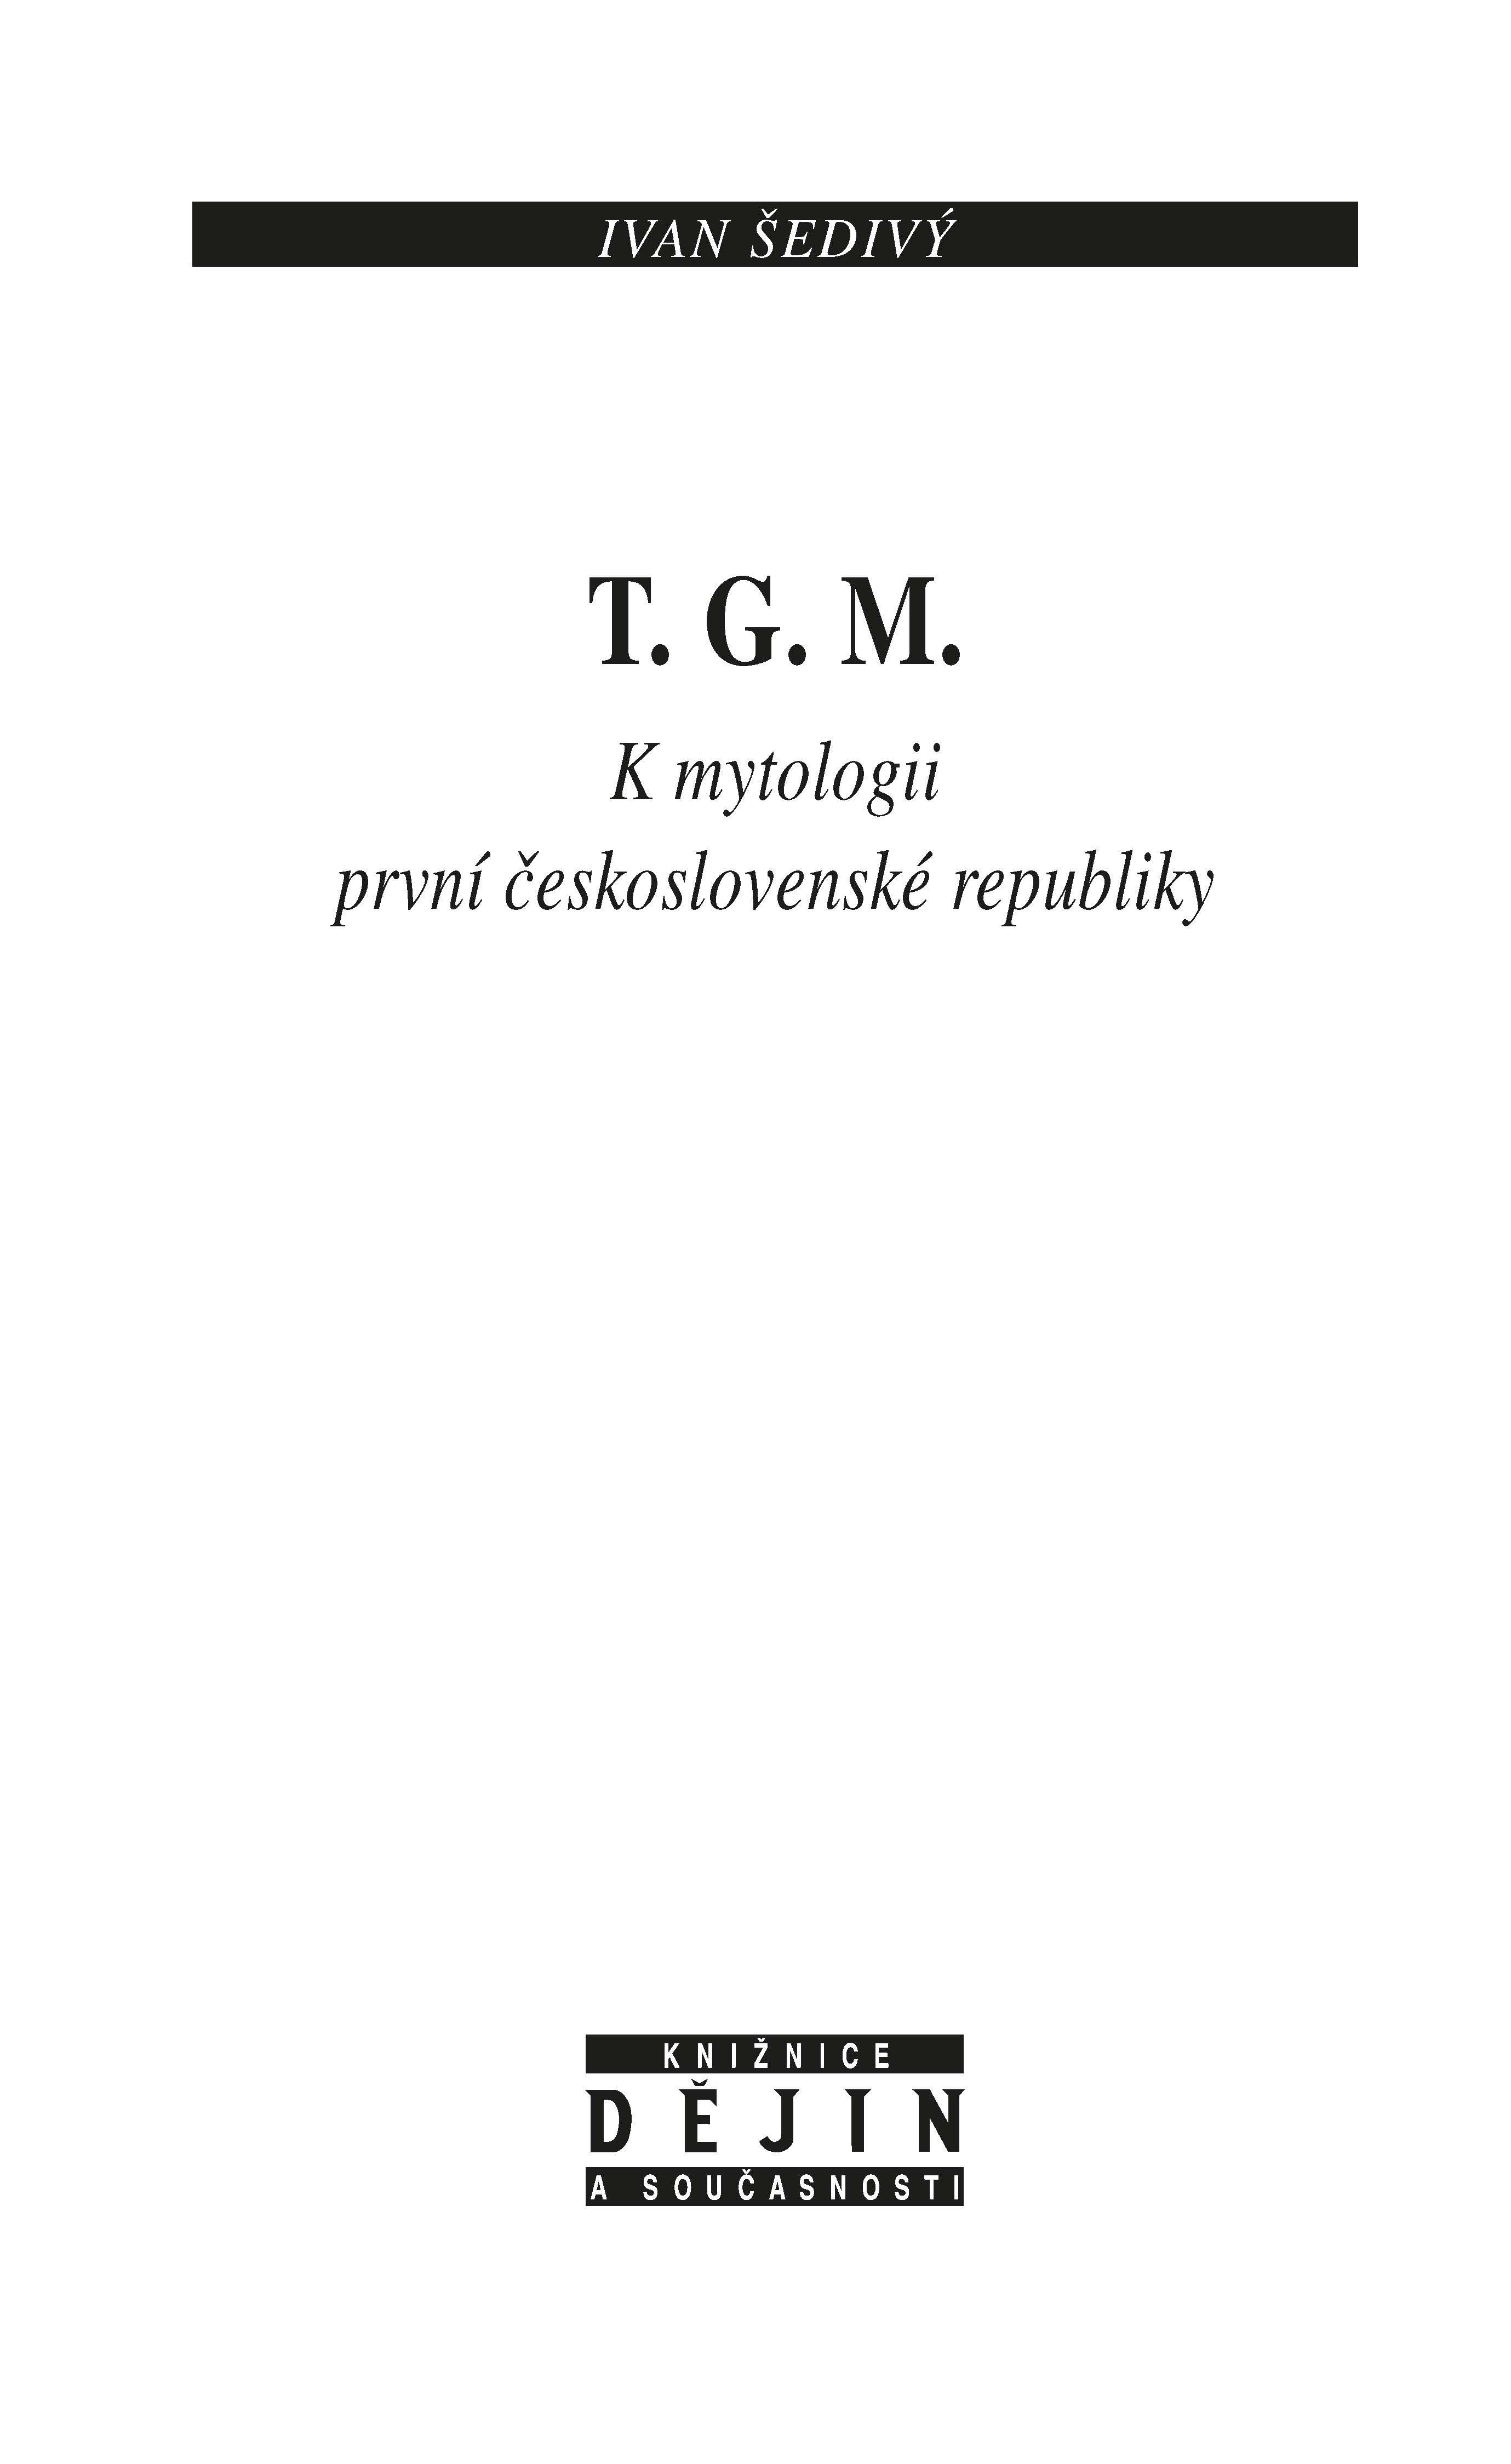 T. G. M. ukázka-1